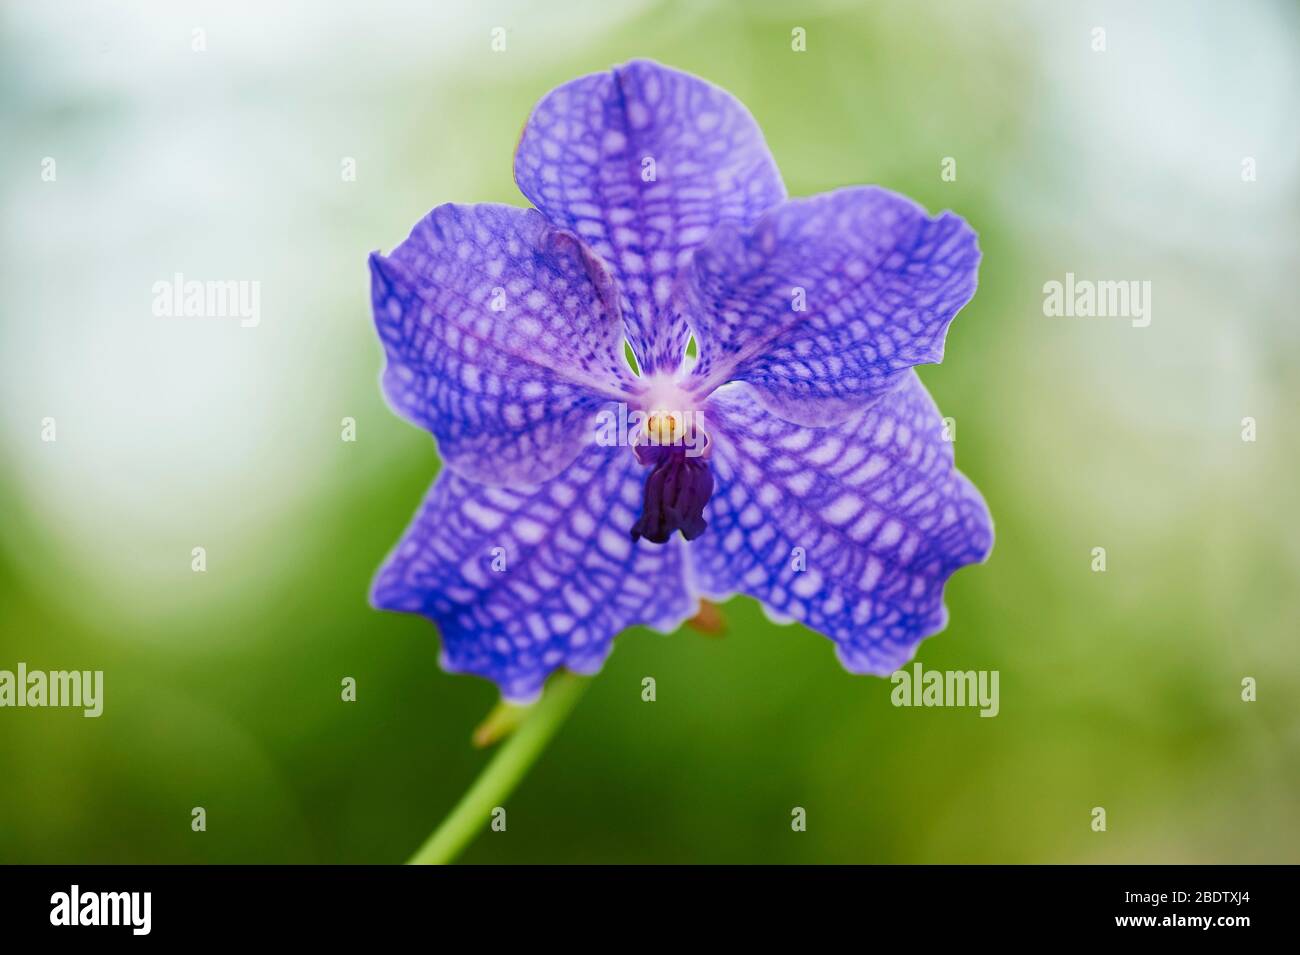 Vanda Robert's Delight orchid, variety Blue Vanda, blossom, Germany Stock Photo